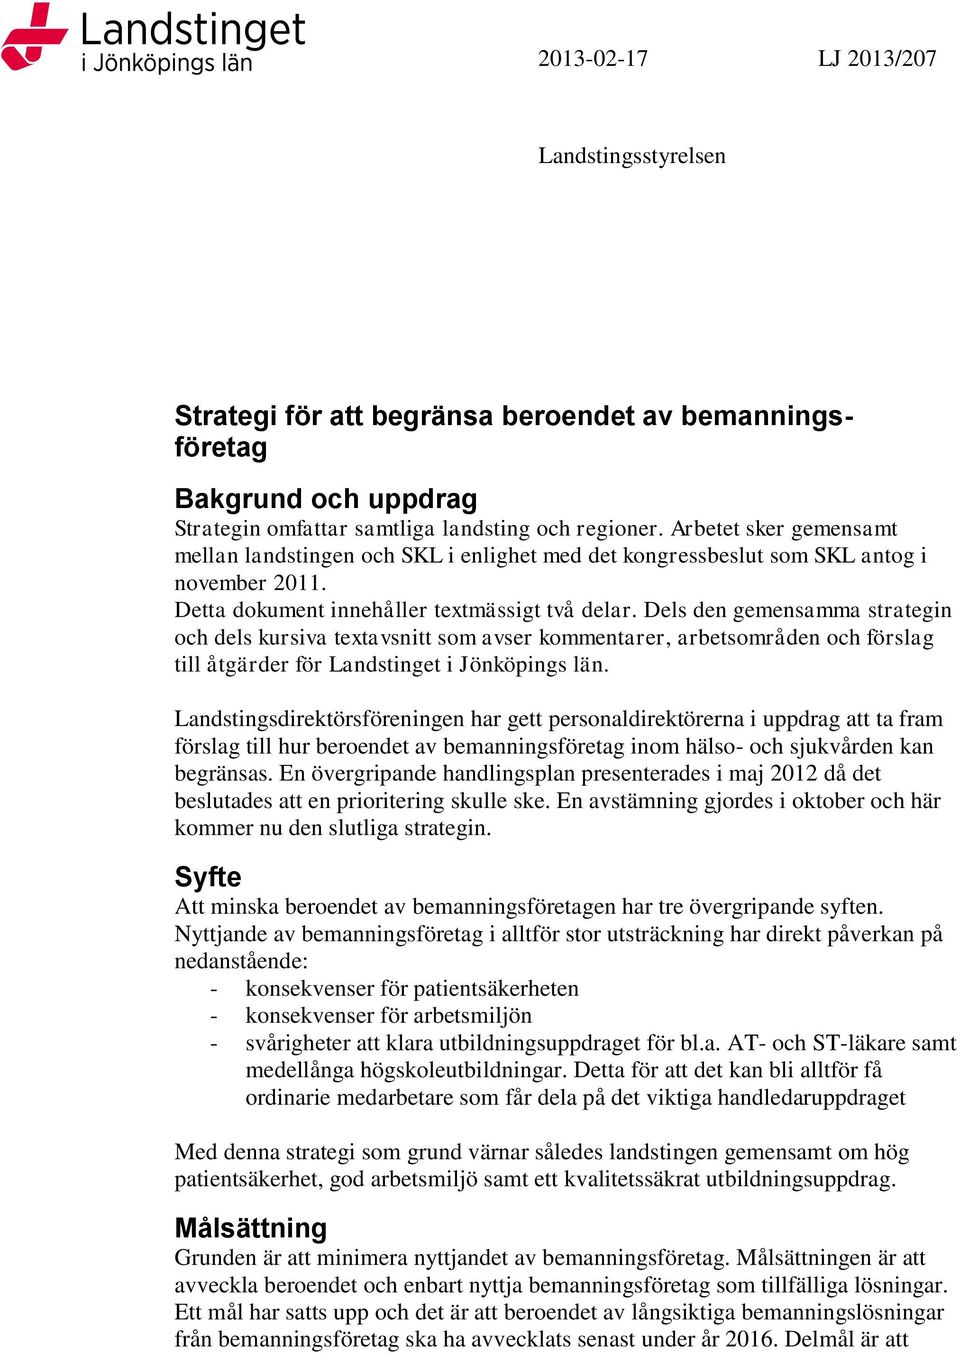 Dels den gemensamma strategin och dels kursiva textavsnitt som avser kommentarer, arbetsområden och förslag till åtgärder för Landstinget i Jönköpings län.